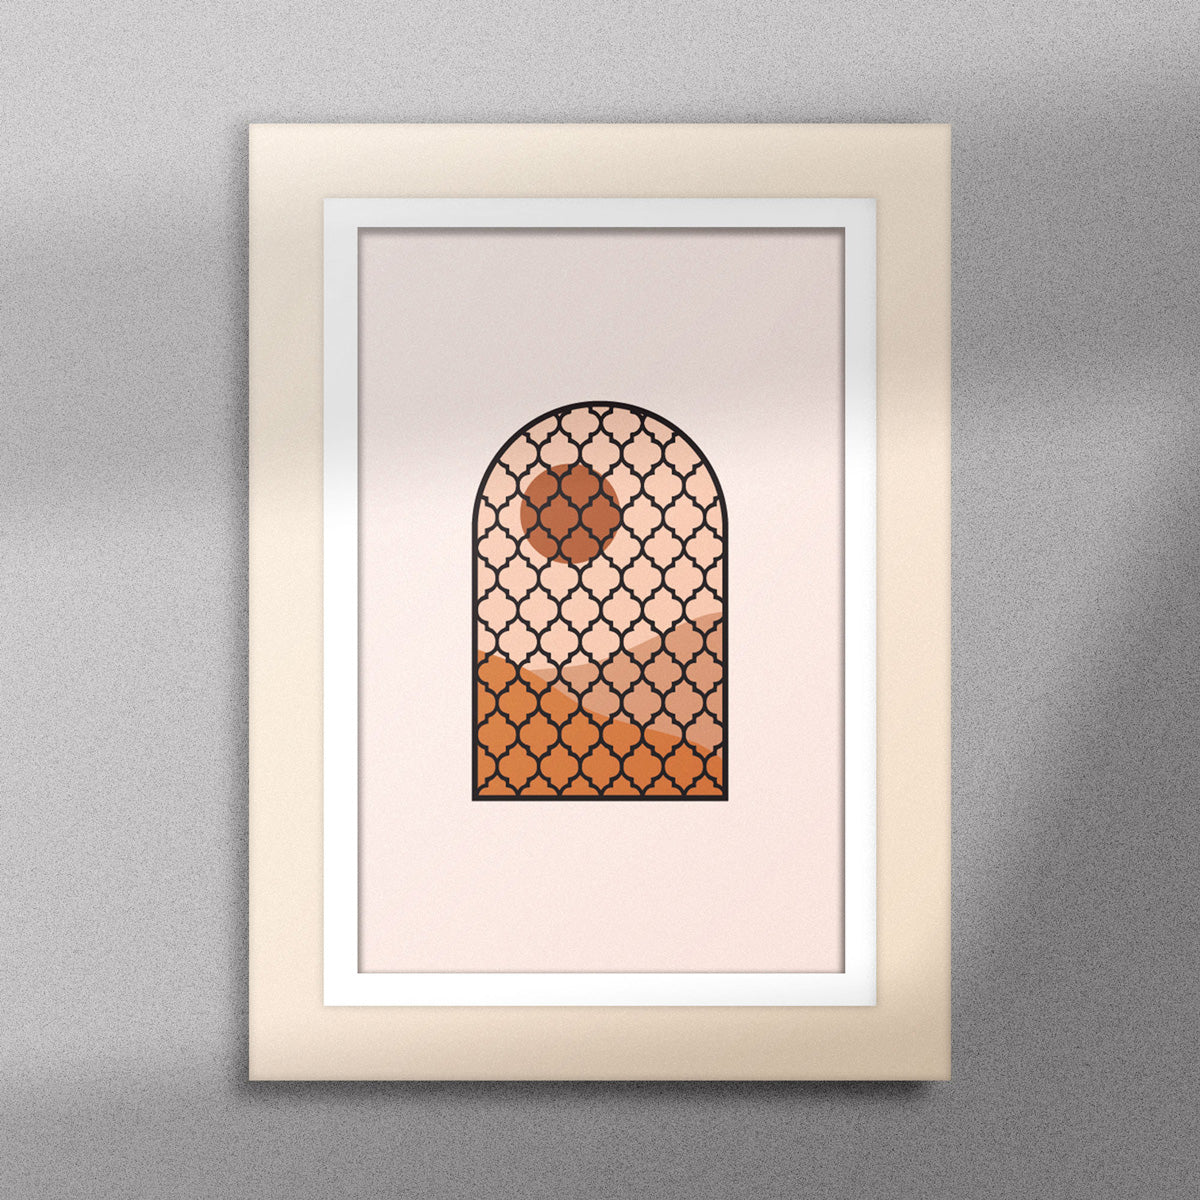  Tableau décoratif d'une illustration d'une fenêtre à grille de fer forgé ancienne, encadré dans un cadre en bois - Format A5.